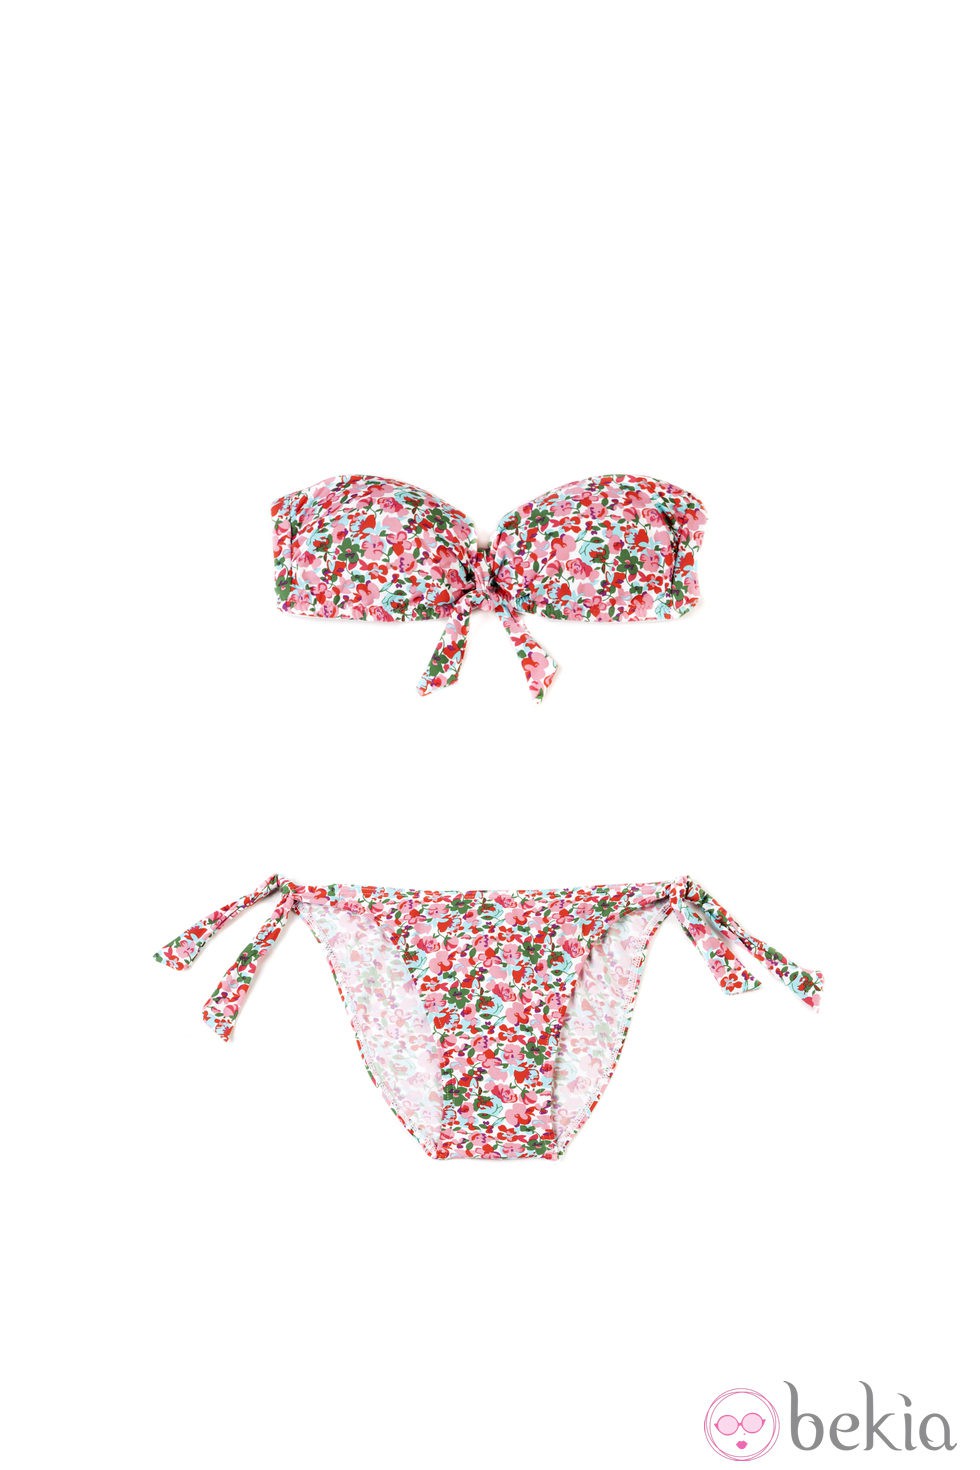 Bikini con estampado floral para verano 2014 de Springfield